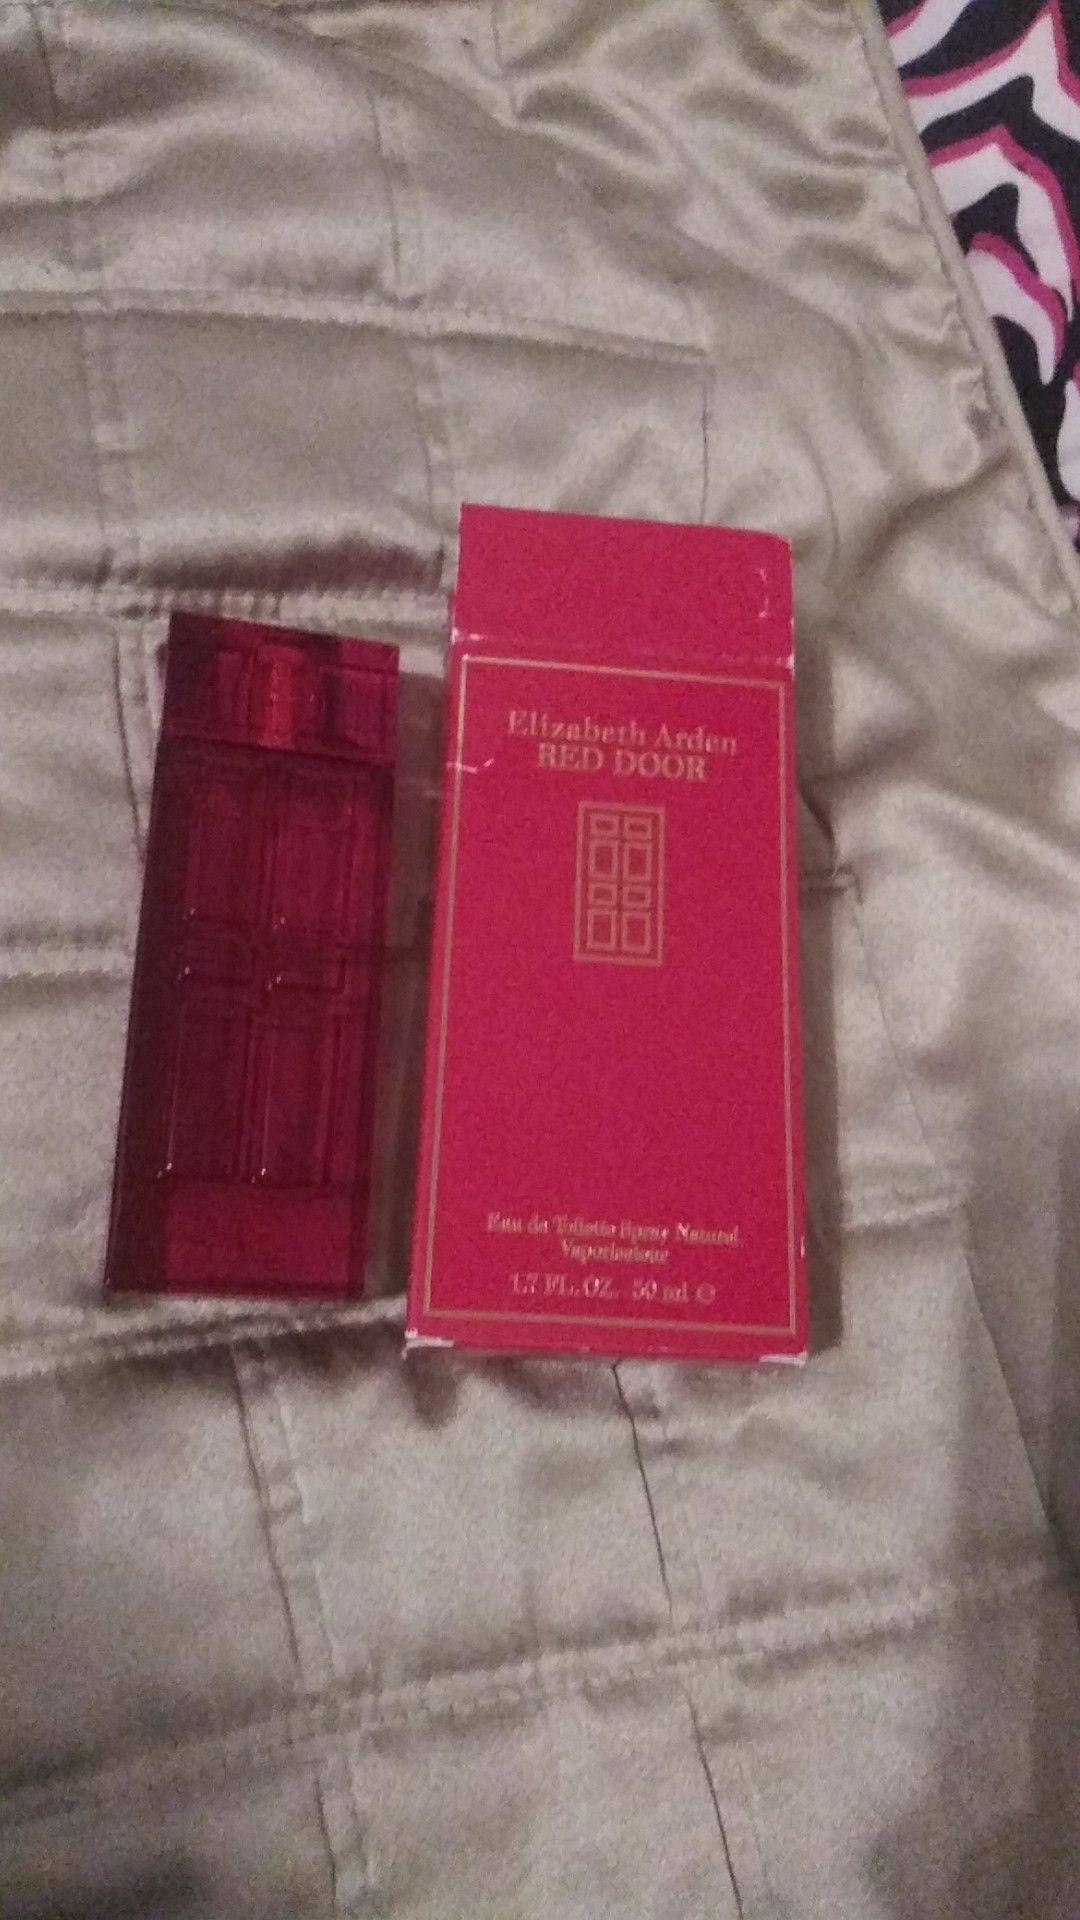 Elizabeth Arden RED DOOR perfume